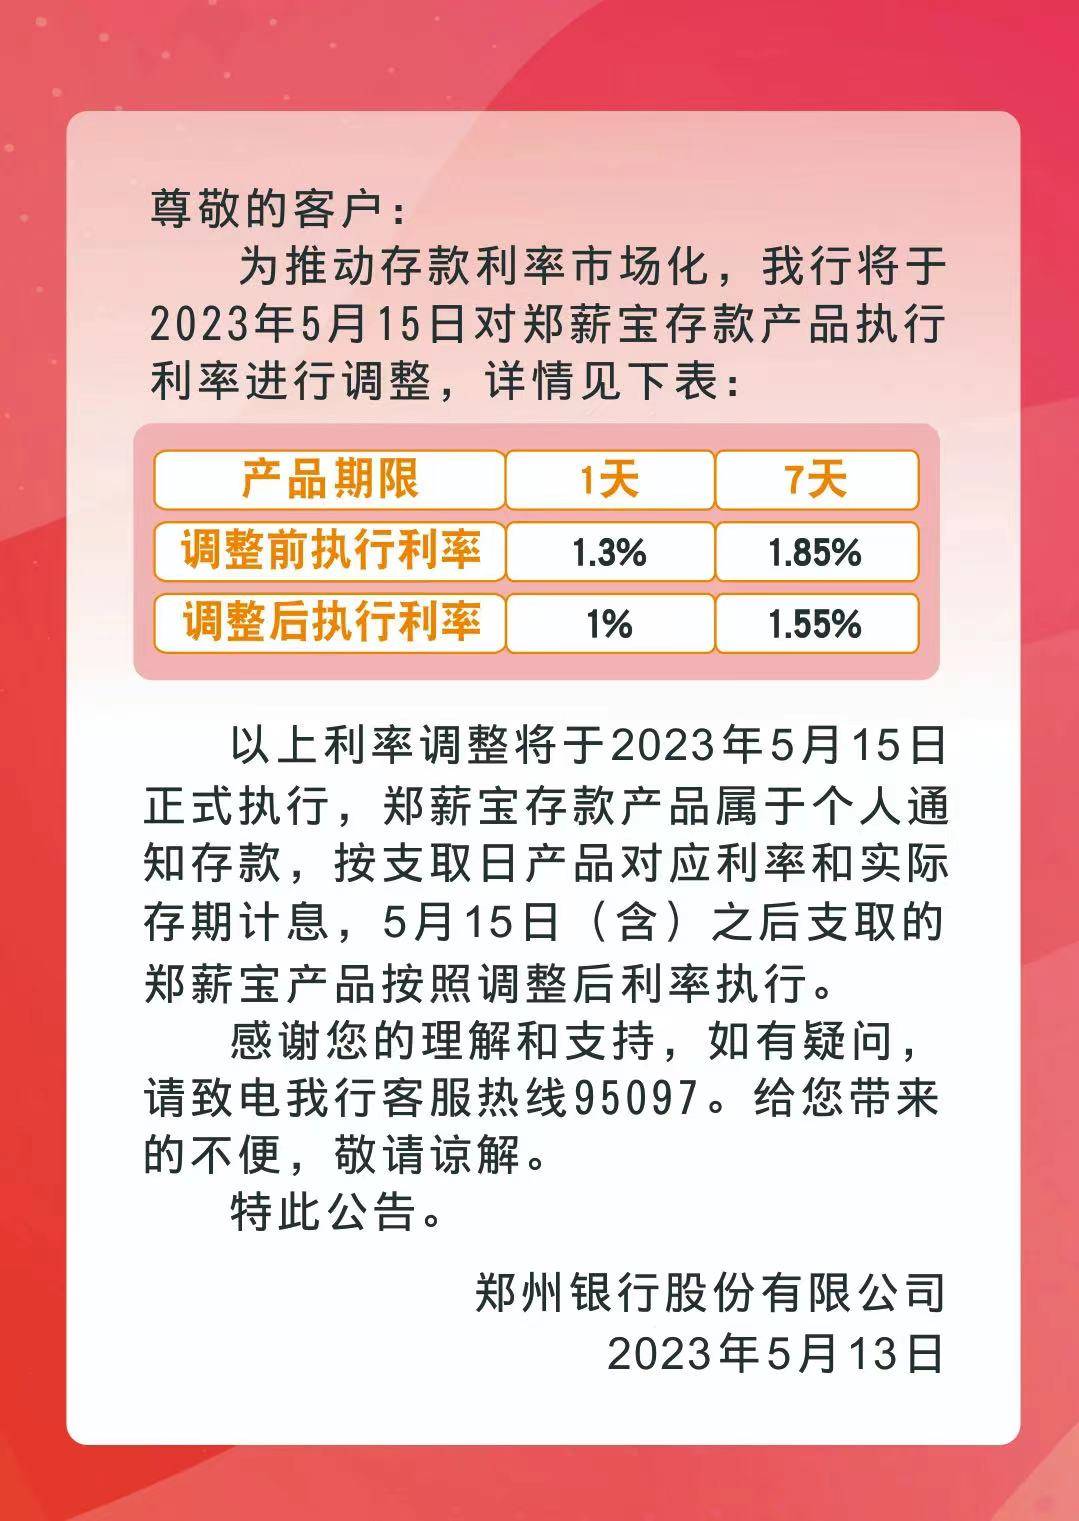 郑州银行将于5月15日对郑薪宝存款产品执行利率进行下调。公告显示，此次调整前郑薪宝的1天期和7天期的执行利率分别为1.3%和1.85%；调整后的执行利率分别为1%和1.55%。以上利率调整将于5月15日正式执行